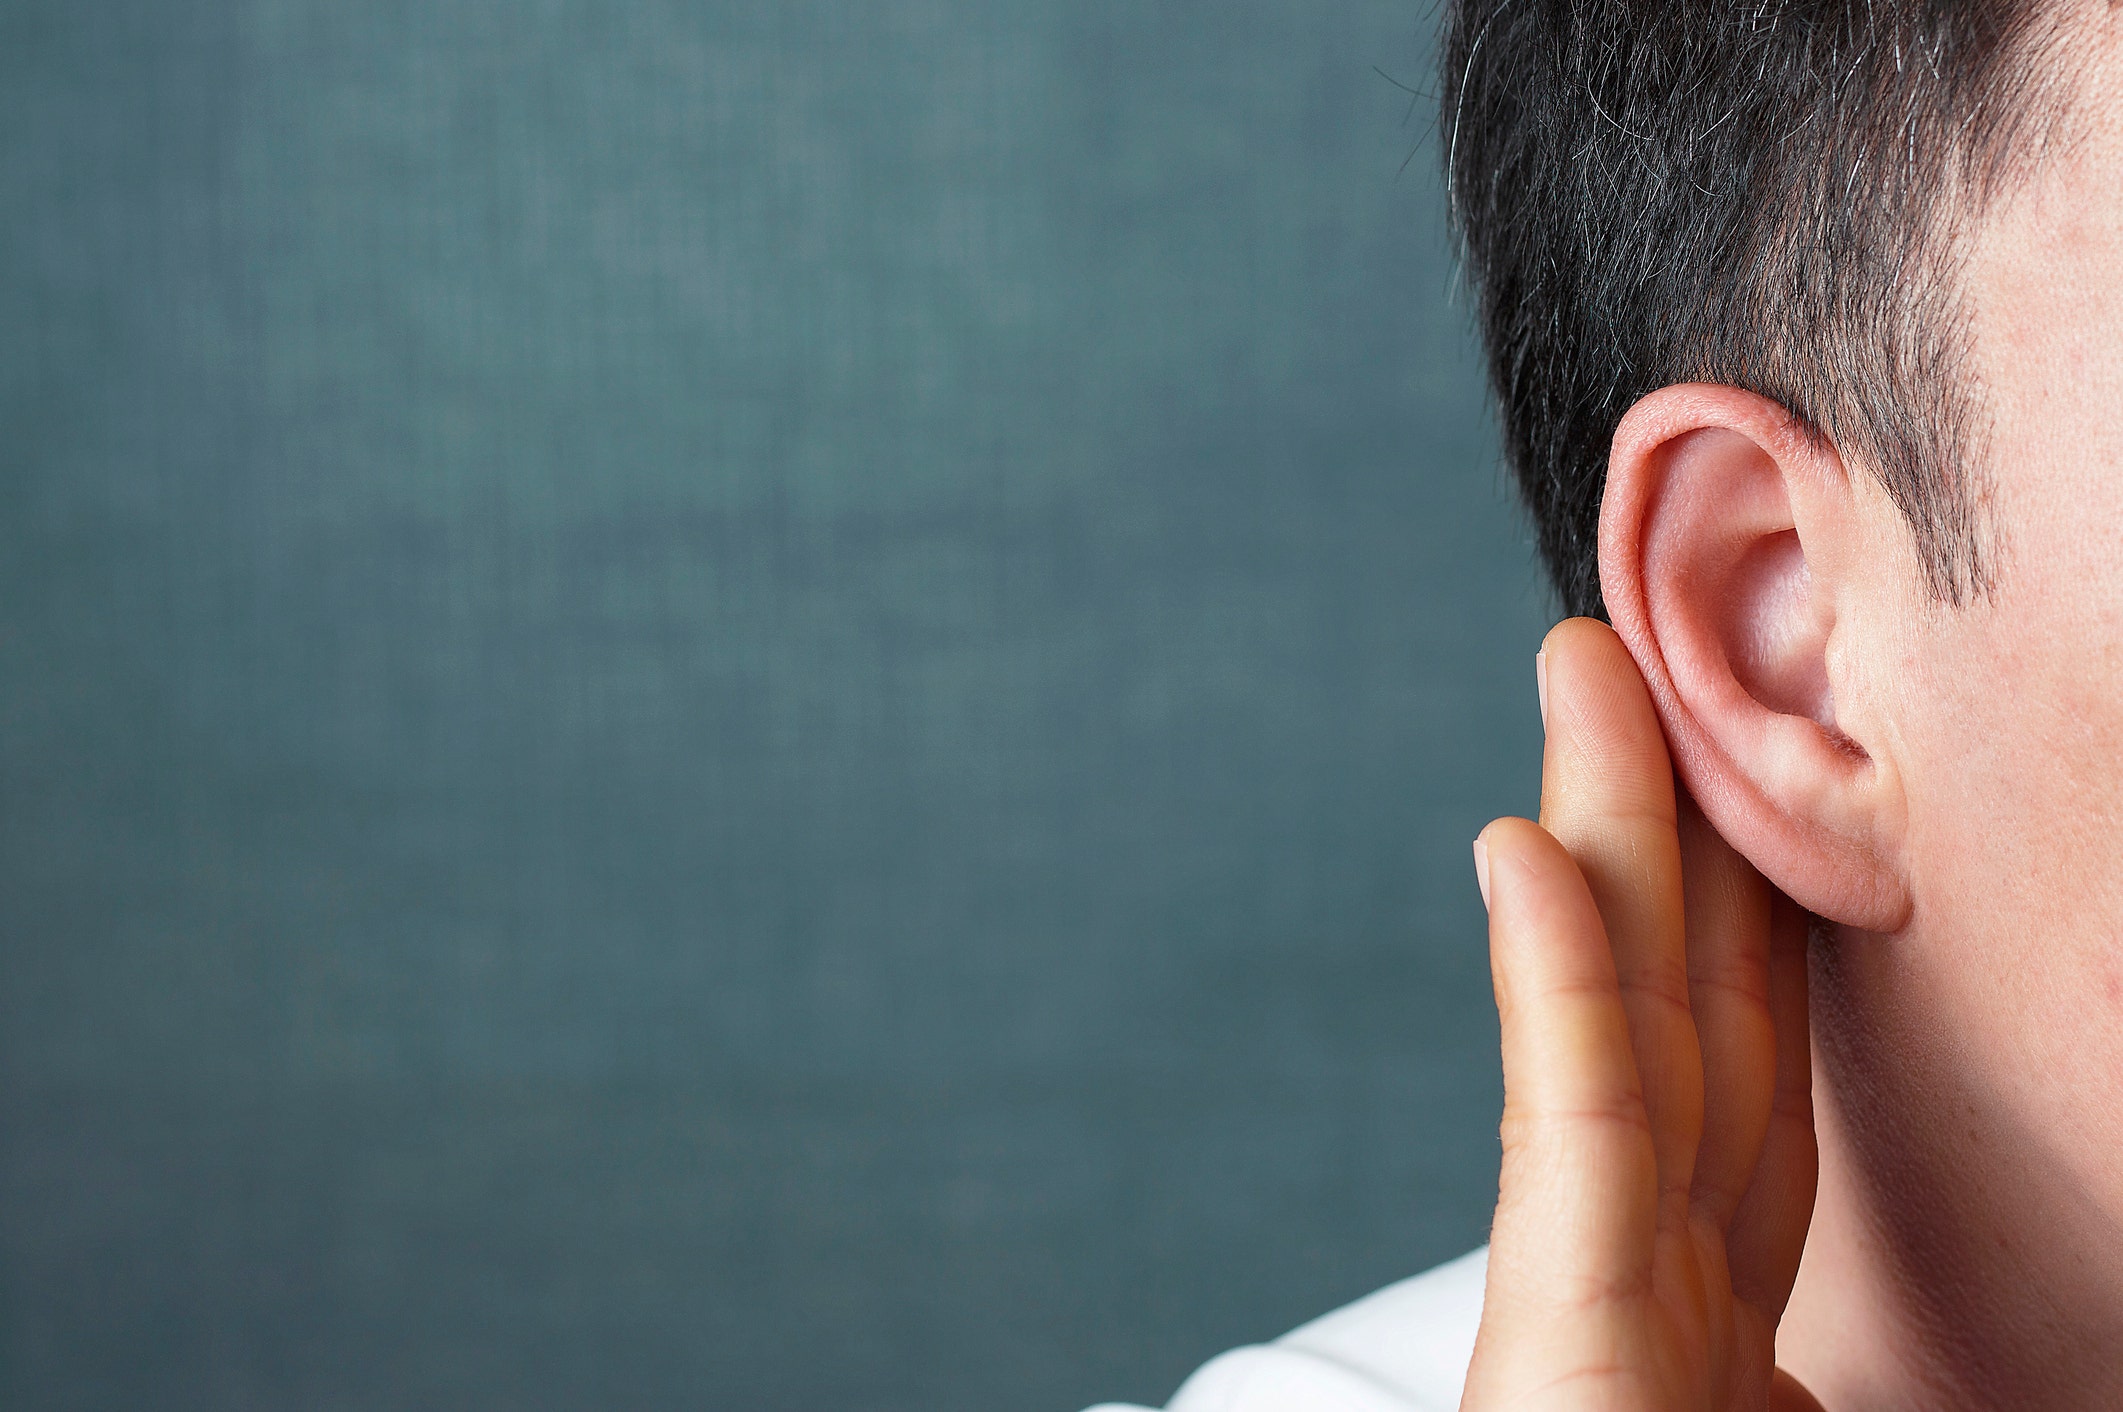 La pérdida auditiva puede causar demencia, encuentra un estudio